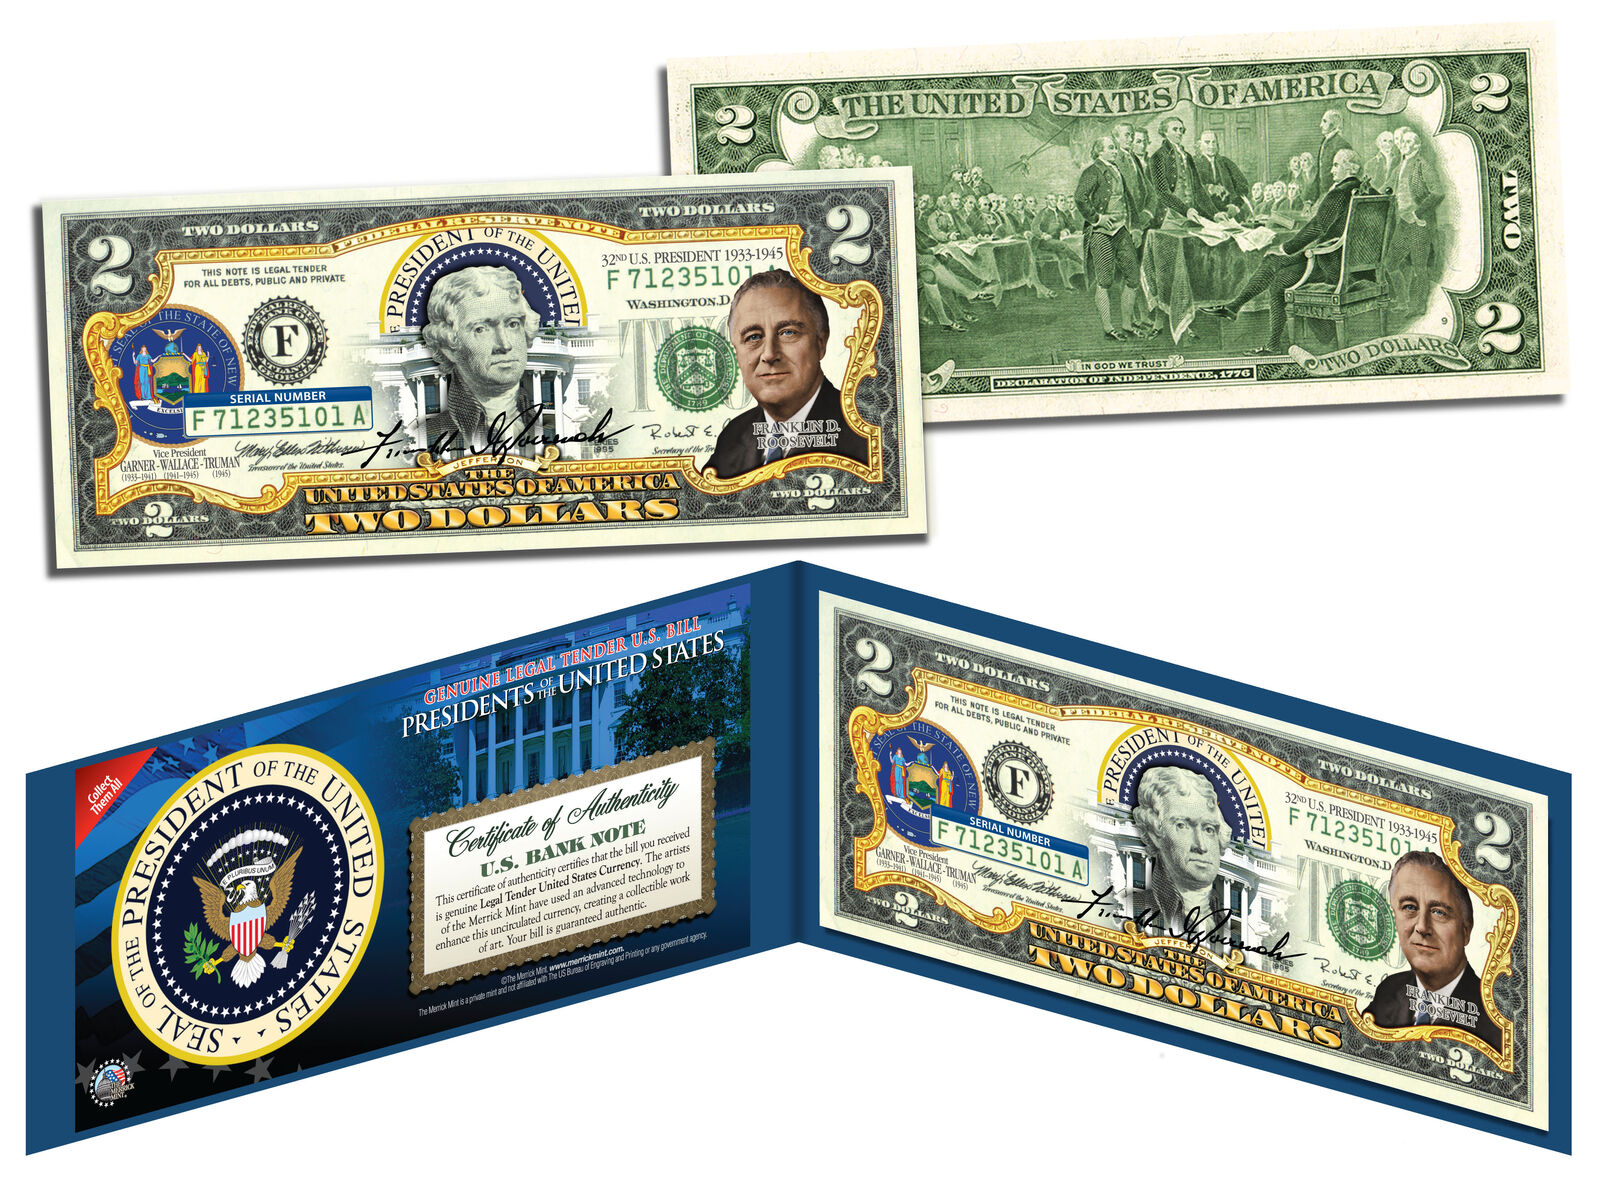 FRANKLIN D ROOSEVELT * 32nd U.S. President * Colorized $2 Bill Legal Tender FDR